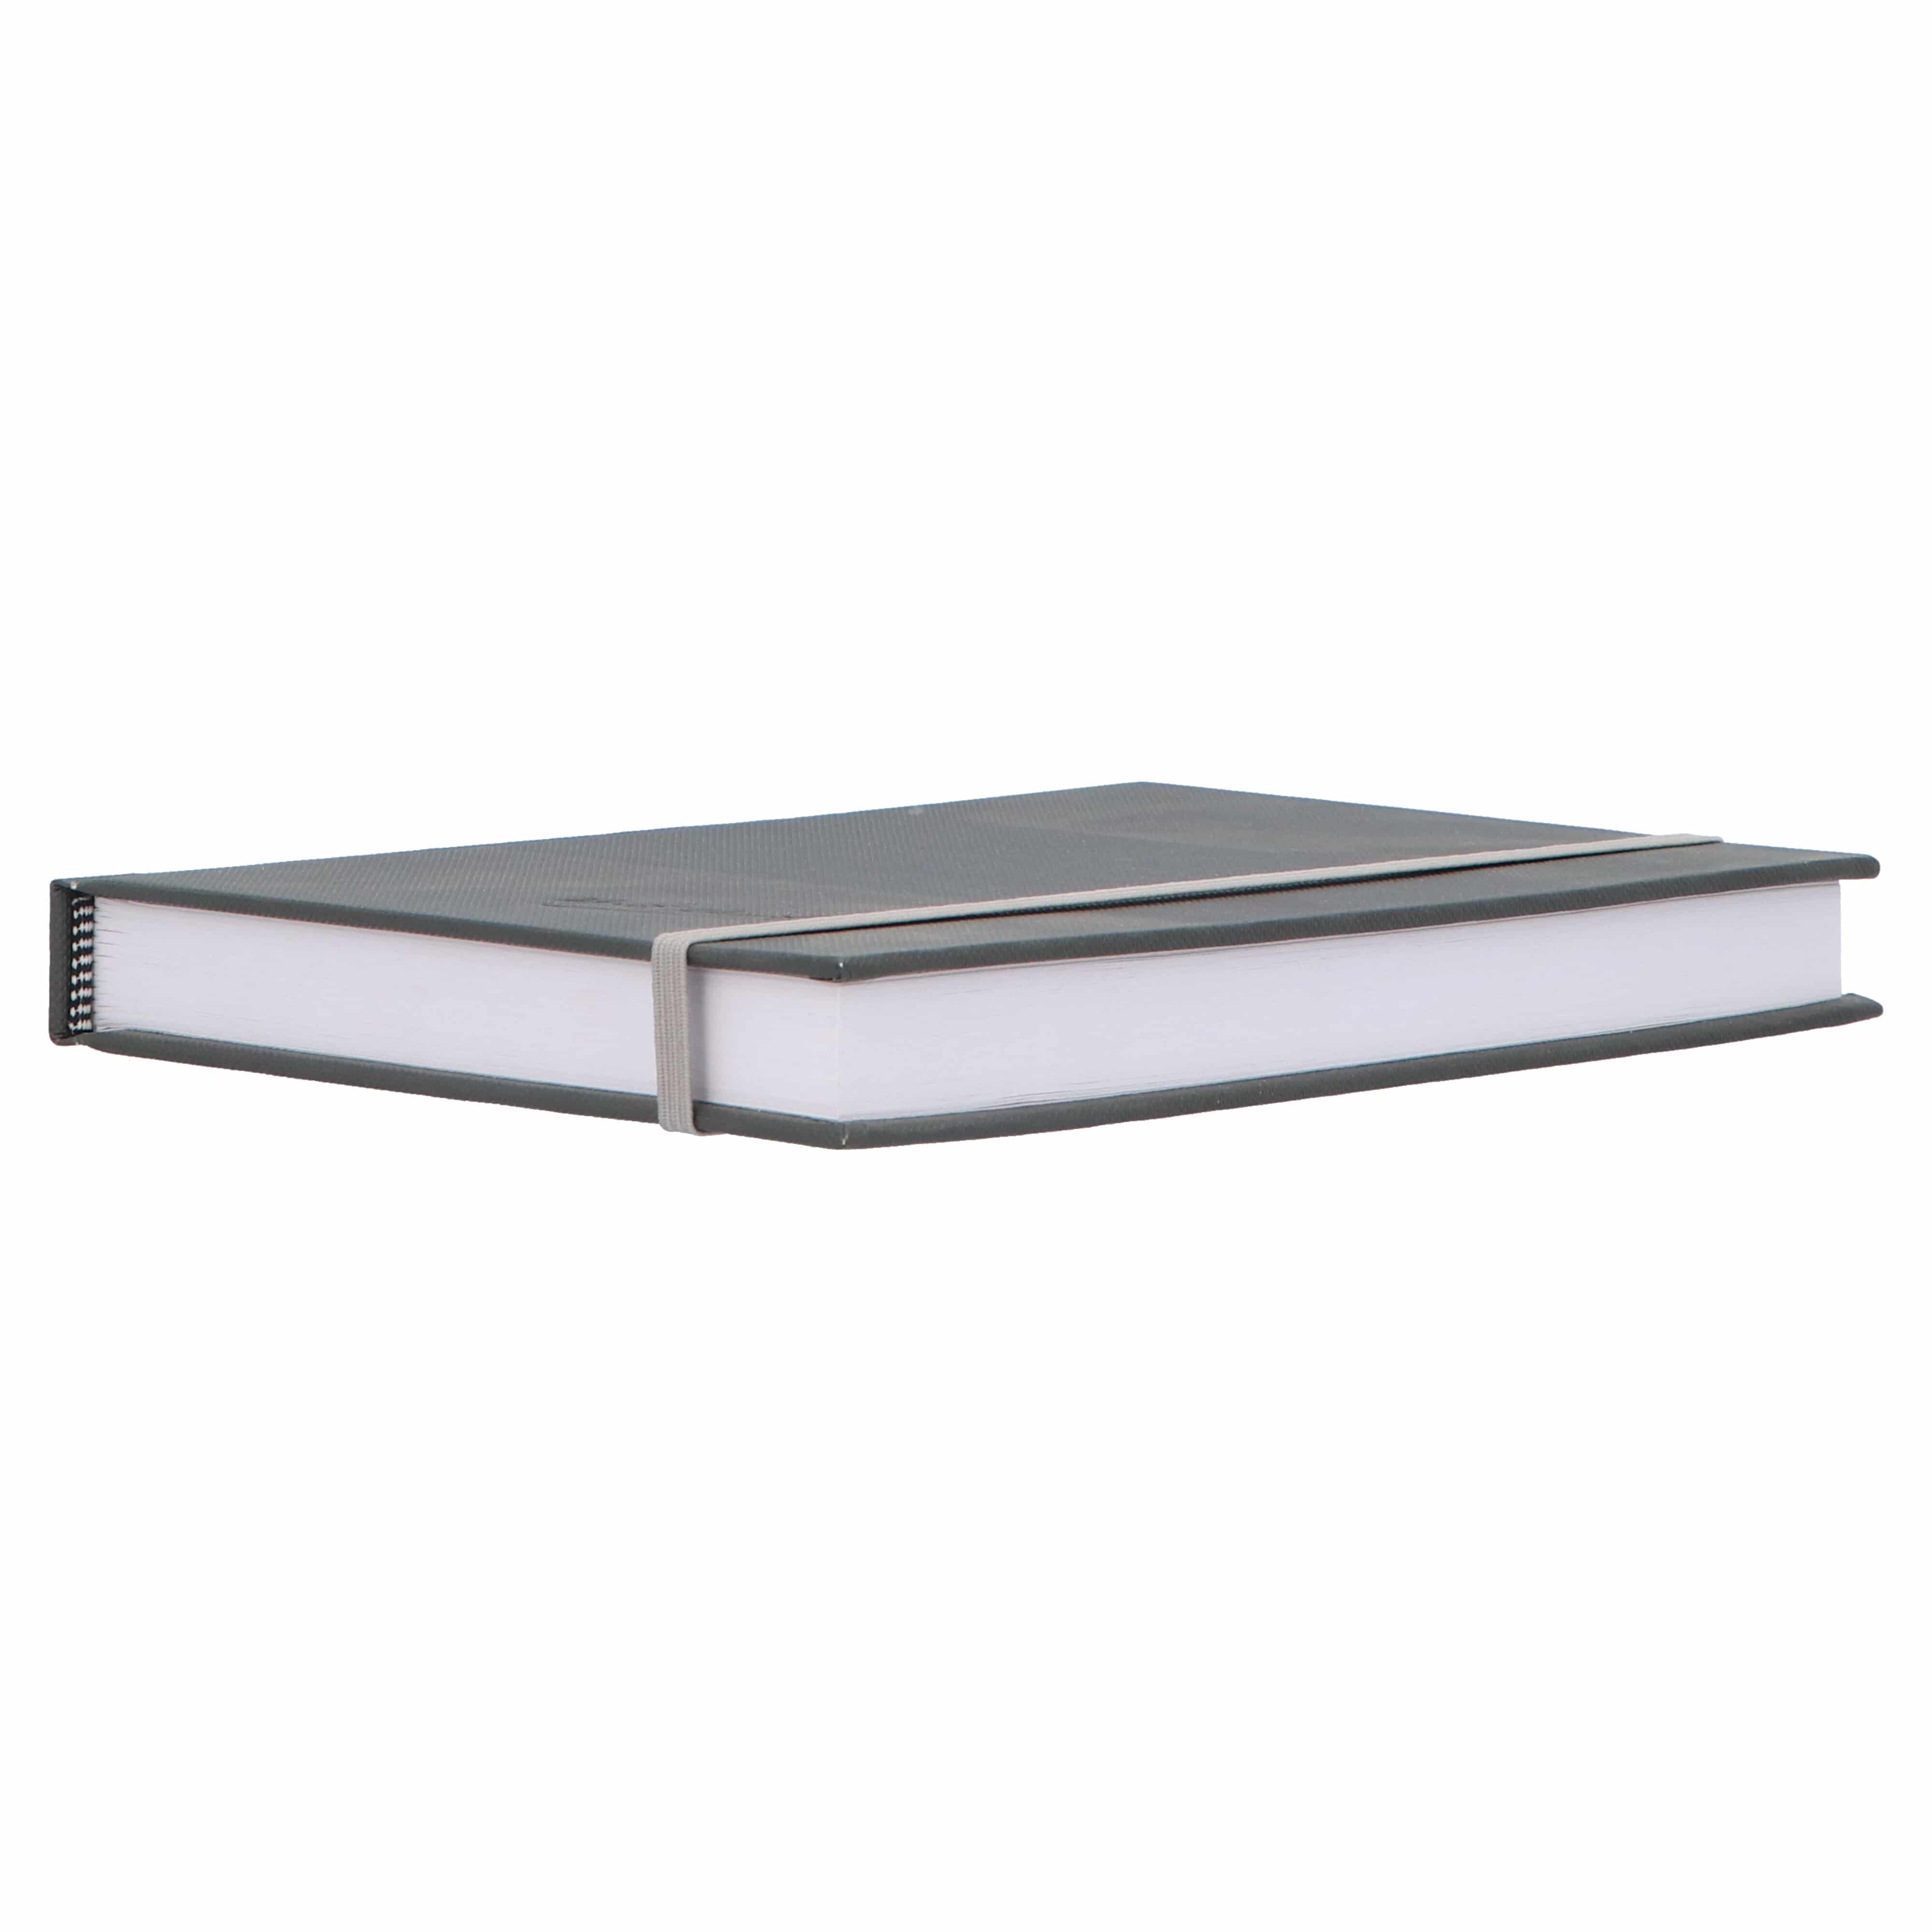 Mont Marte® Hardcover Schetsboek met Blanco vellen 110 gram A5